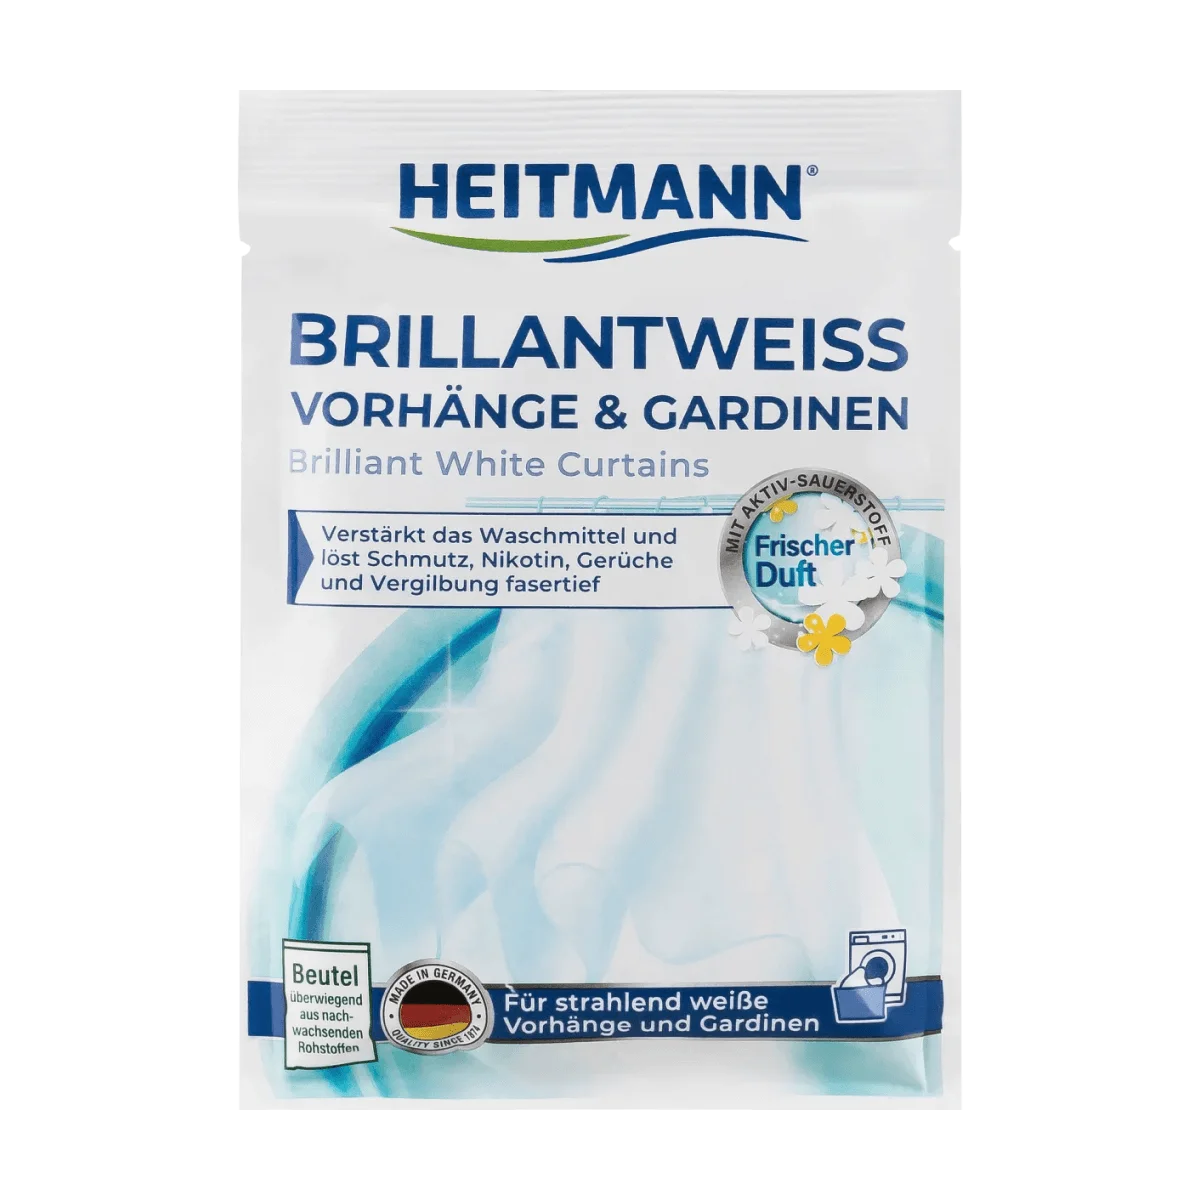 Heitmann Waschmittel Brillantweiß Vorhänge & Gardinen, 50 g